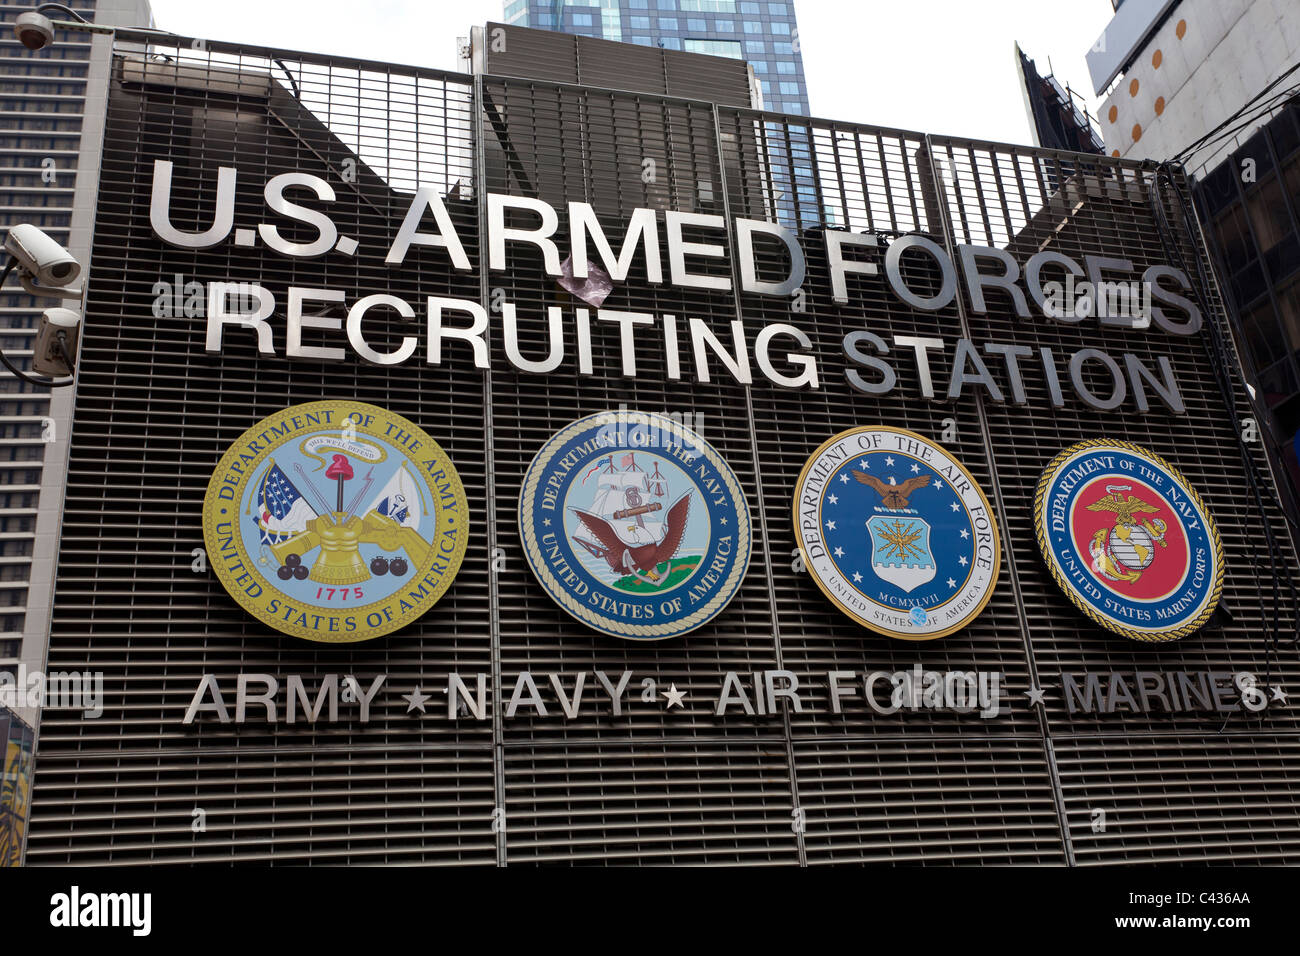 Forze armate USA il reclutamento Station, Times Square Manhattan, New York, Stati Uniti d'America Foto Stock